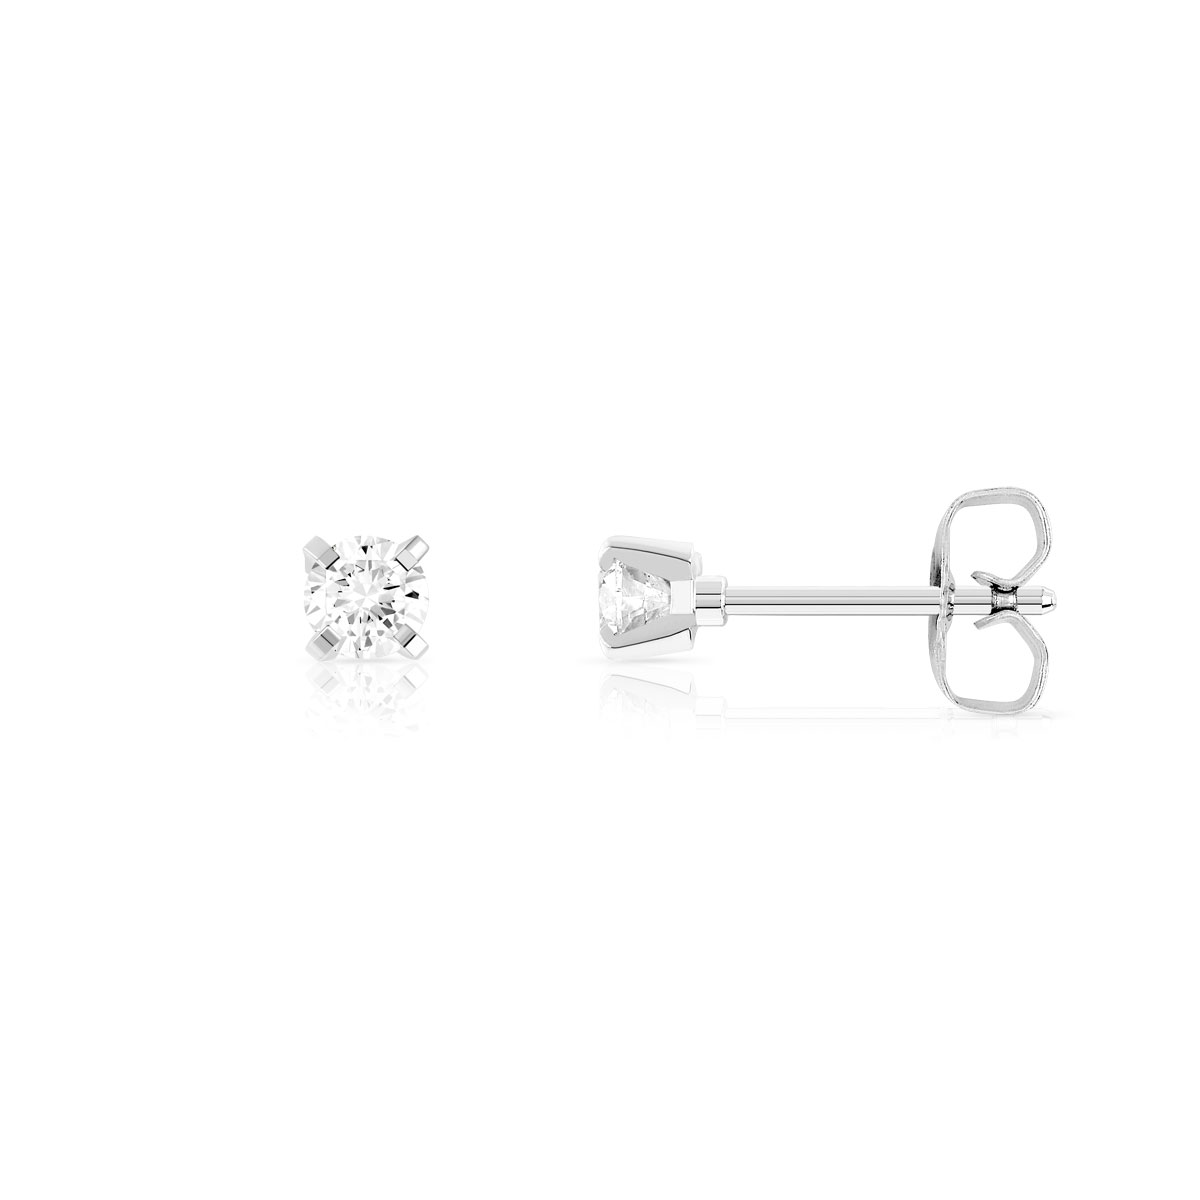 Boucles d'oreilles or 750 blanc diamants syntétiques 0.20 caratt